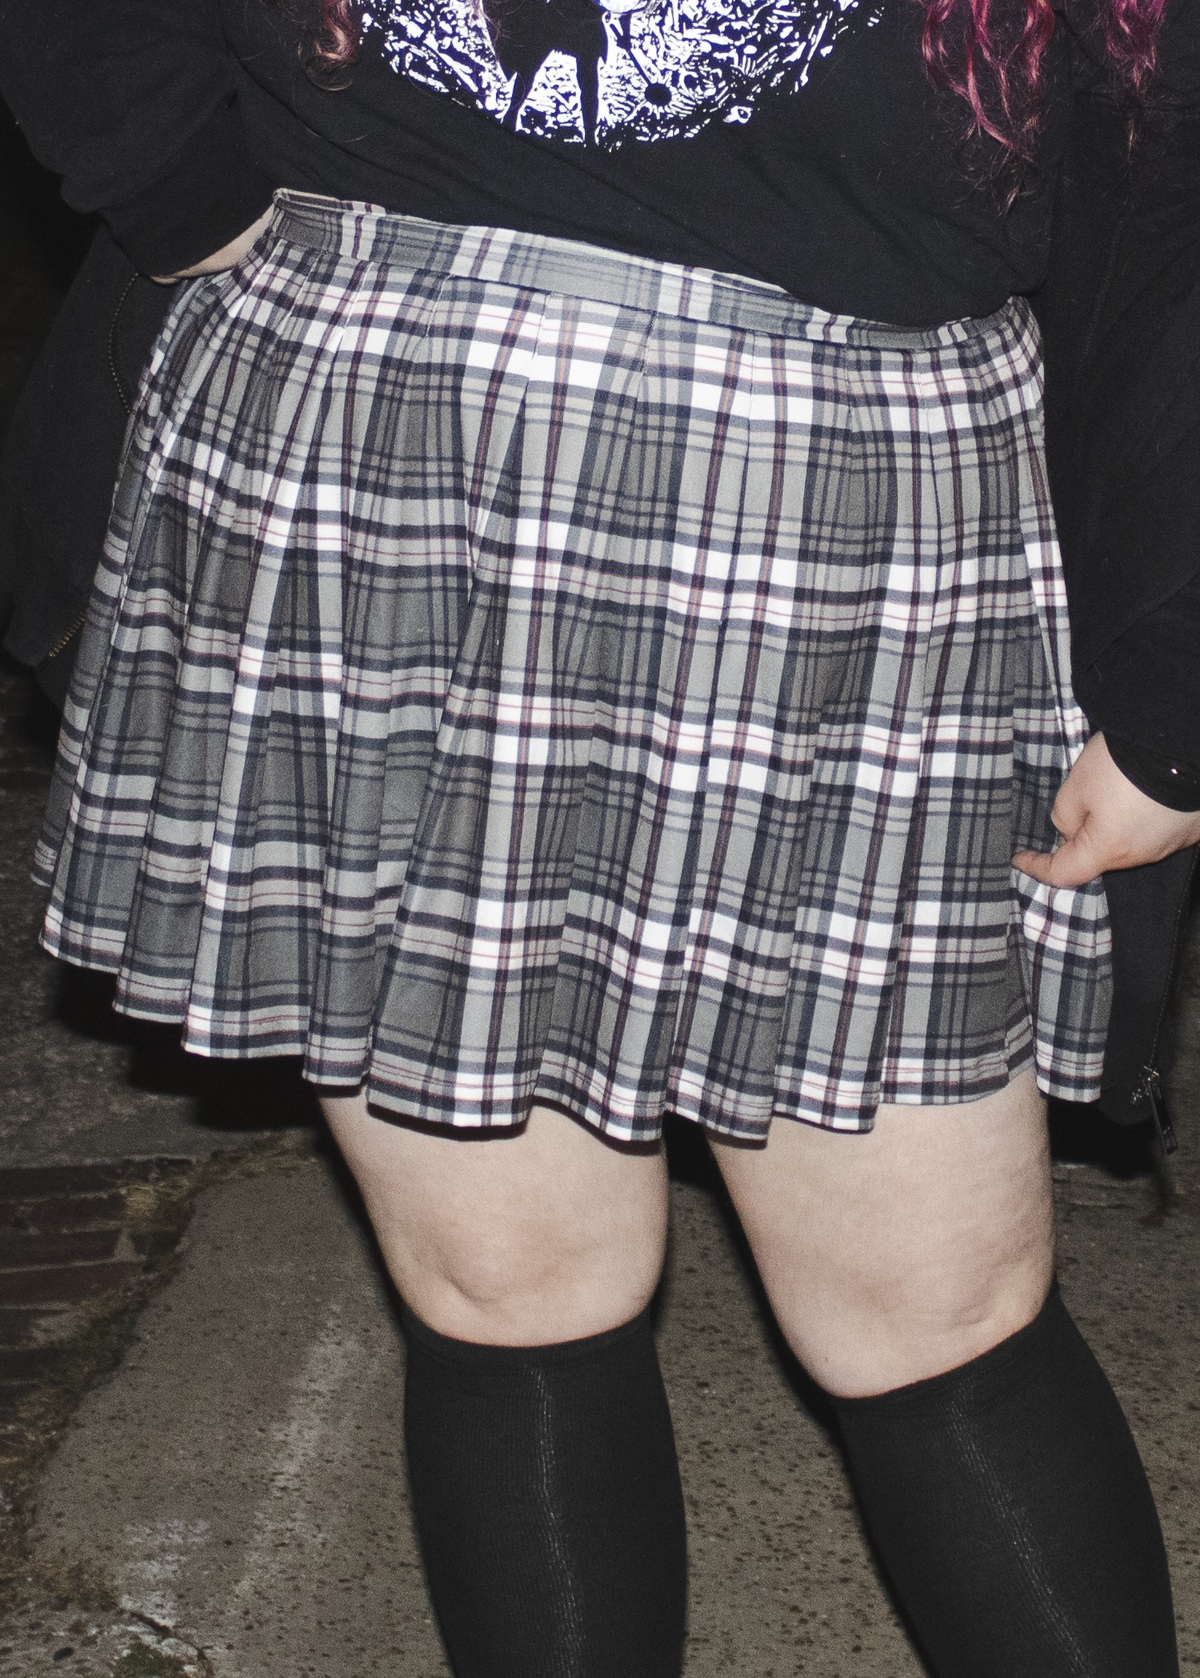 plaid pleated mini skirt